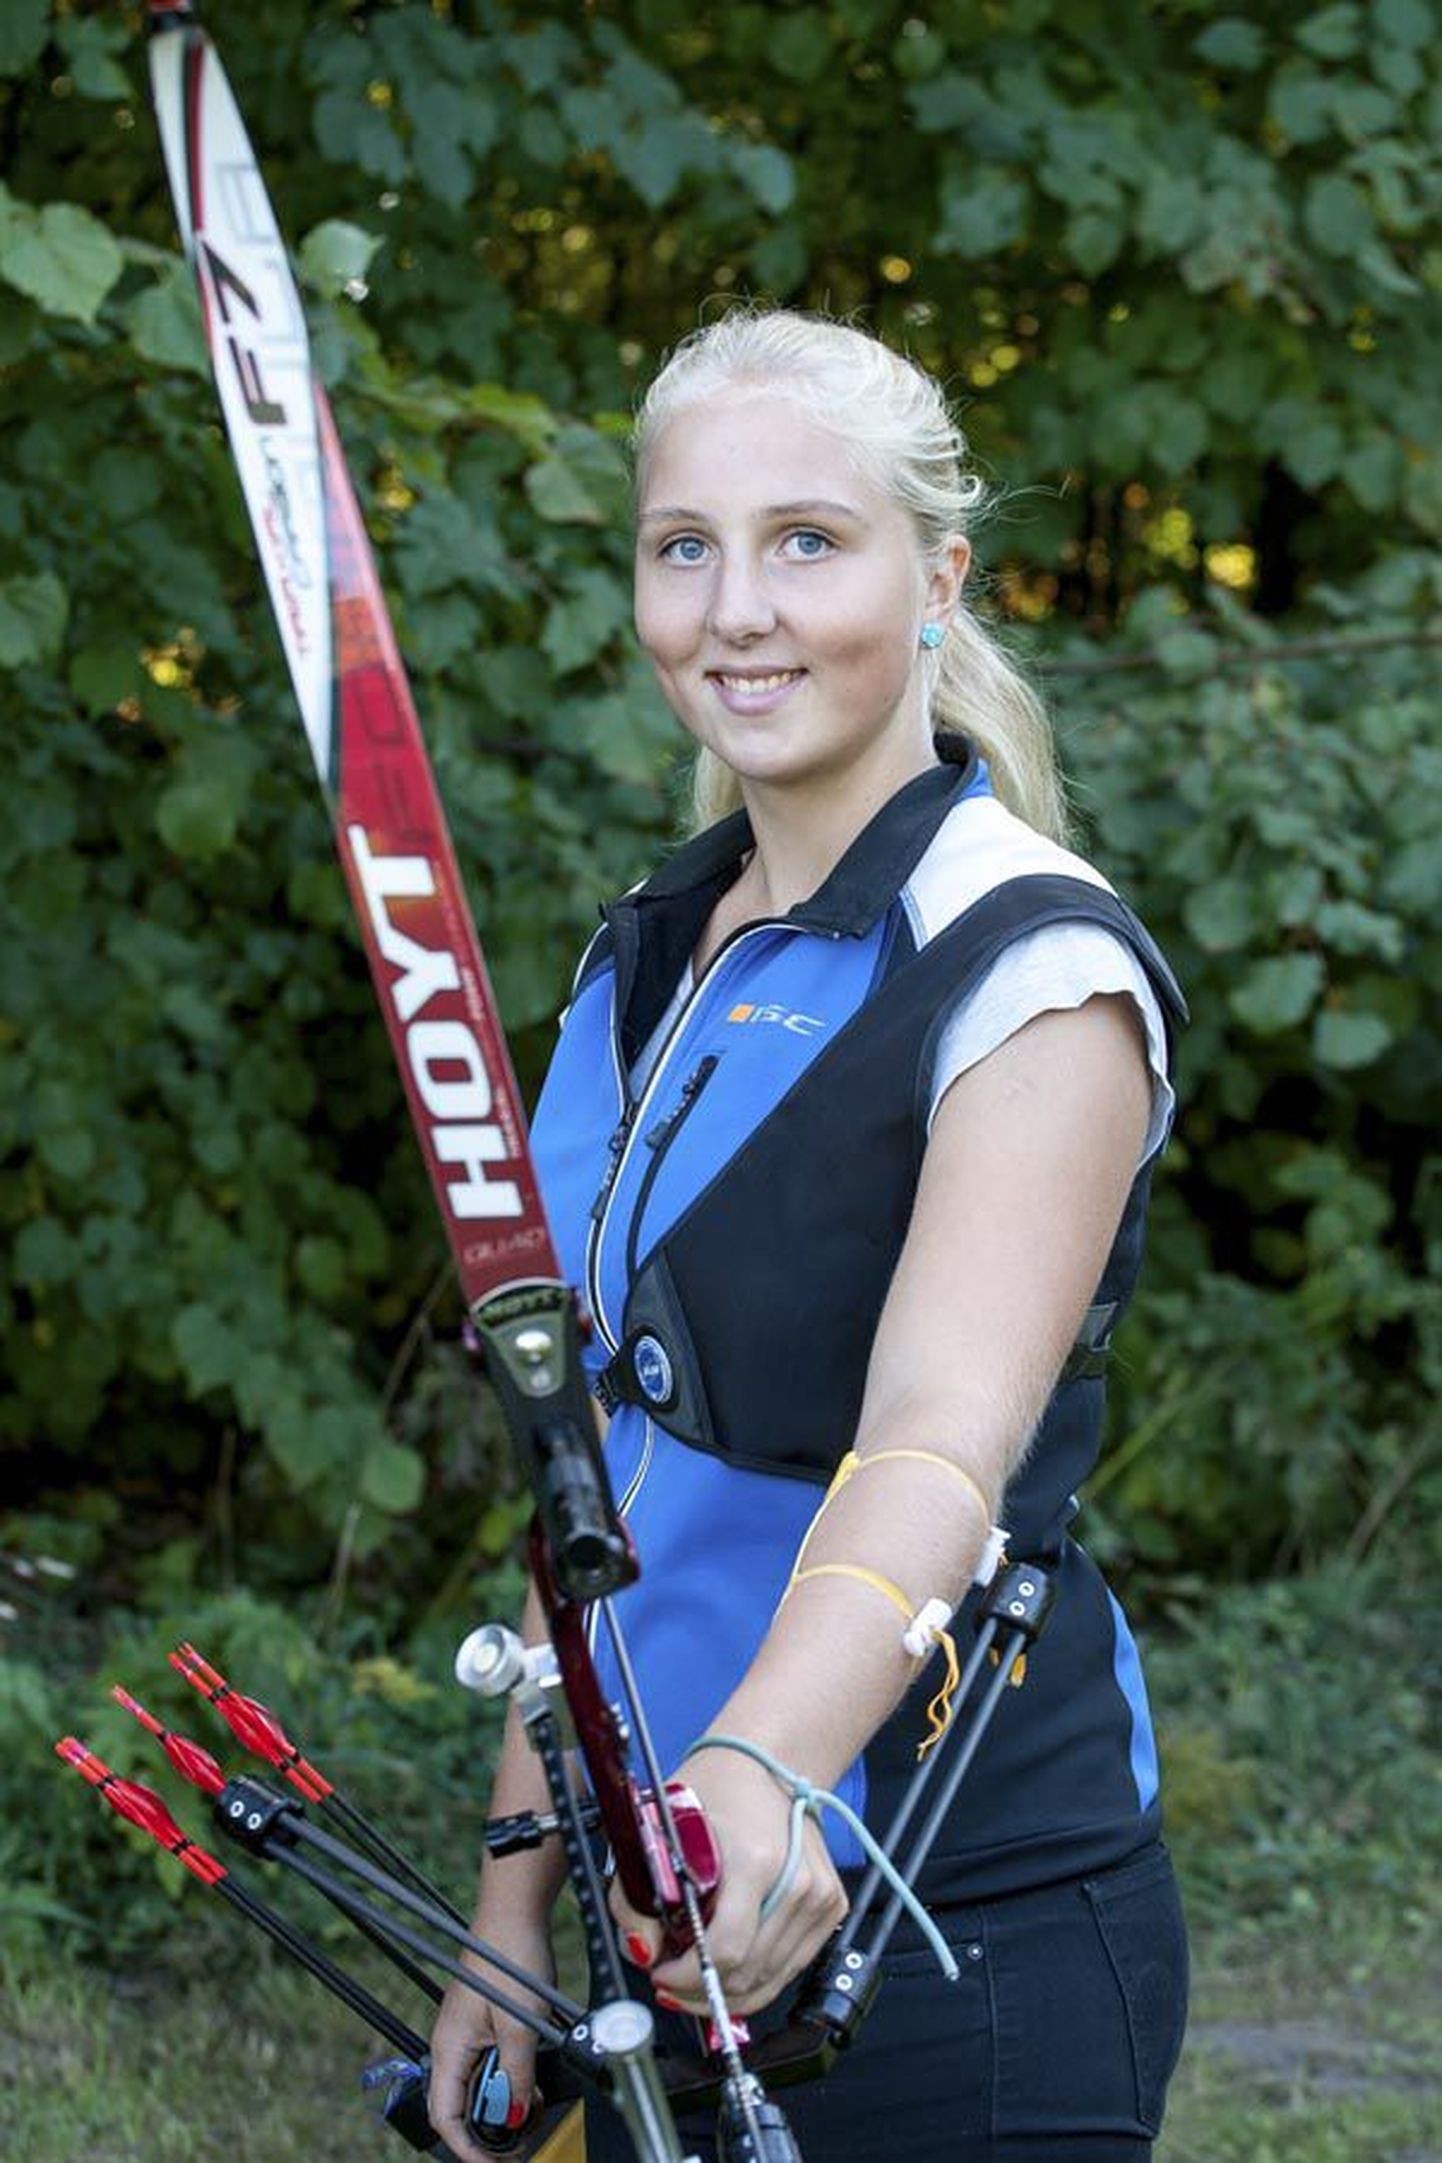 Laura Nurmsalu lõpetas Armeenias peetud Euroopa vibulaskmise meistrivõistlused parima eestlasena 17. kohaga. Olümpiamängudele püüdlev sportlane osaleb juba tuleval nädalal turniiril Poolas.